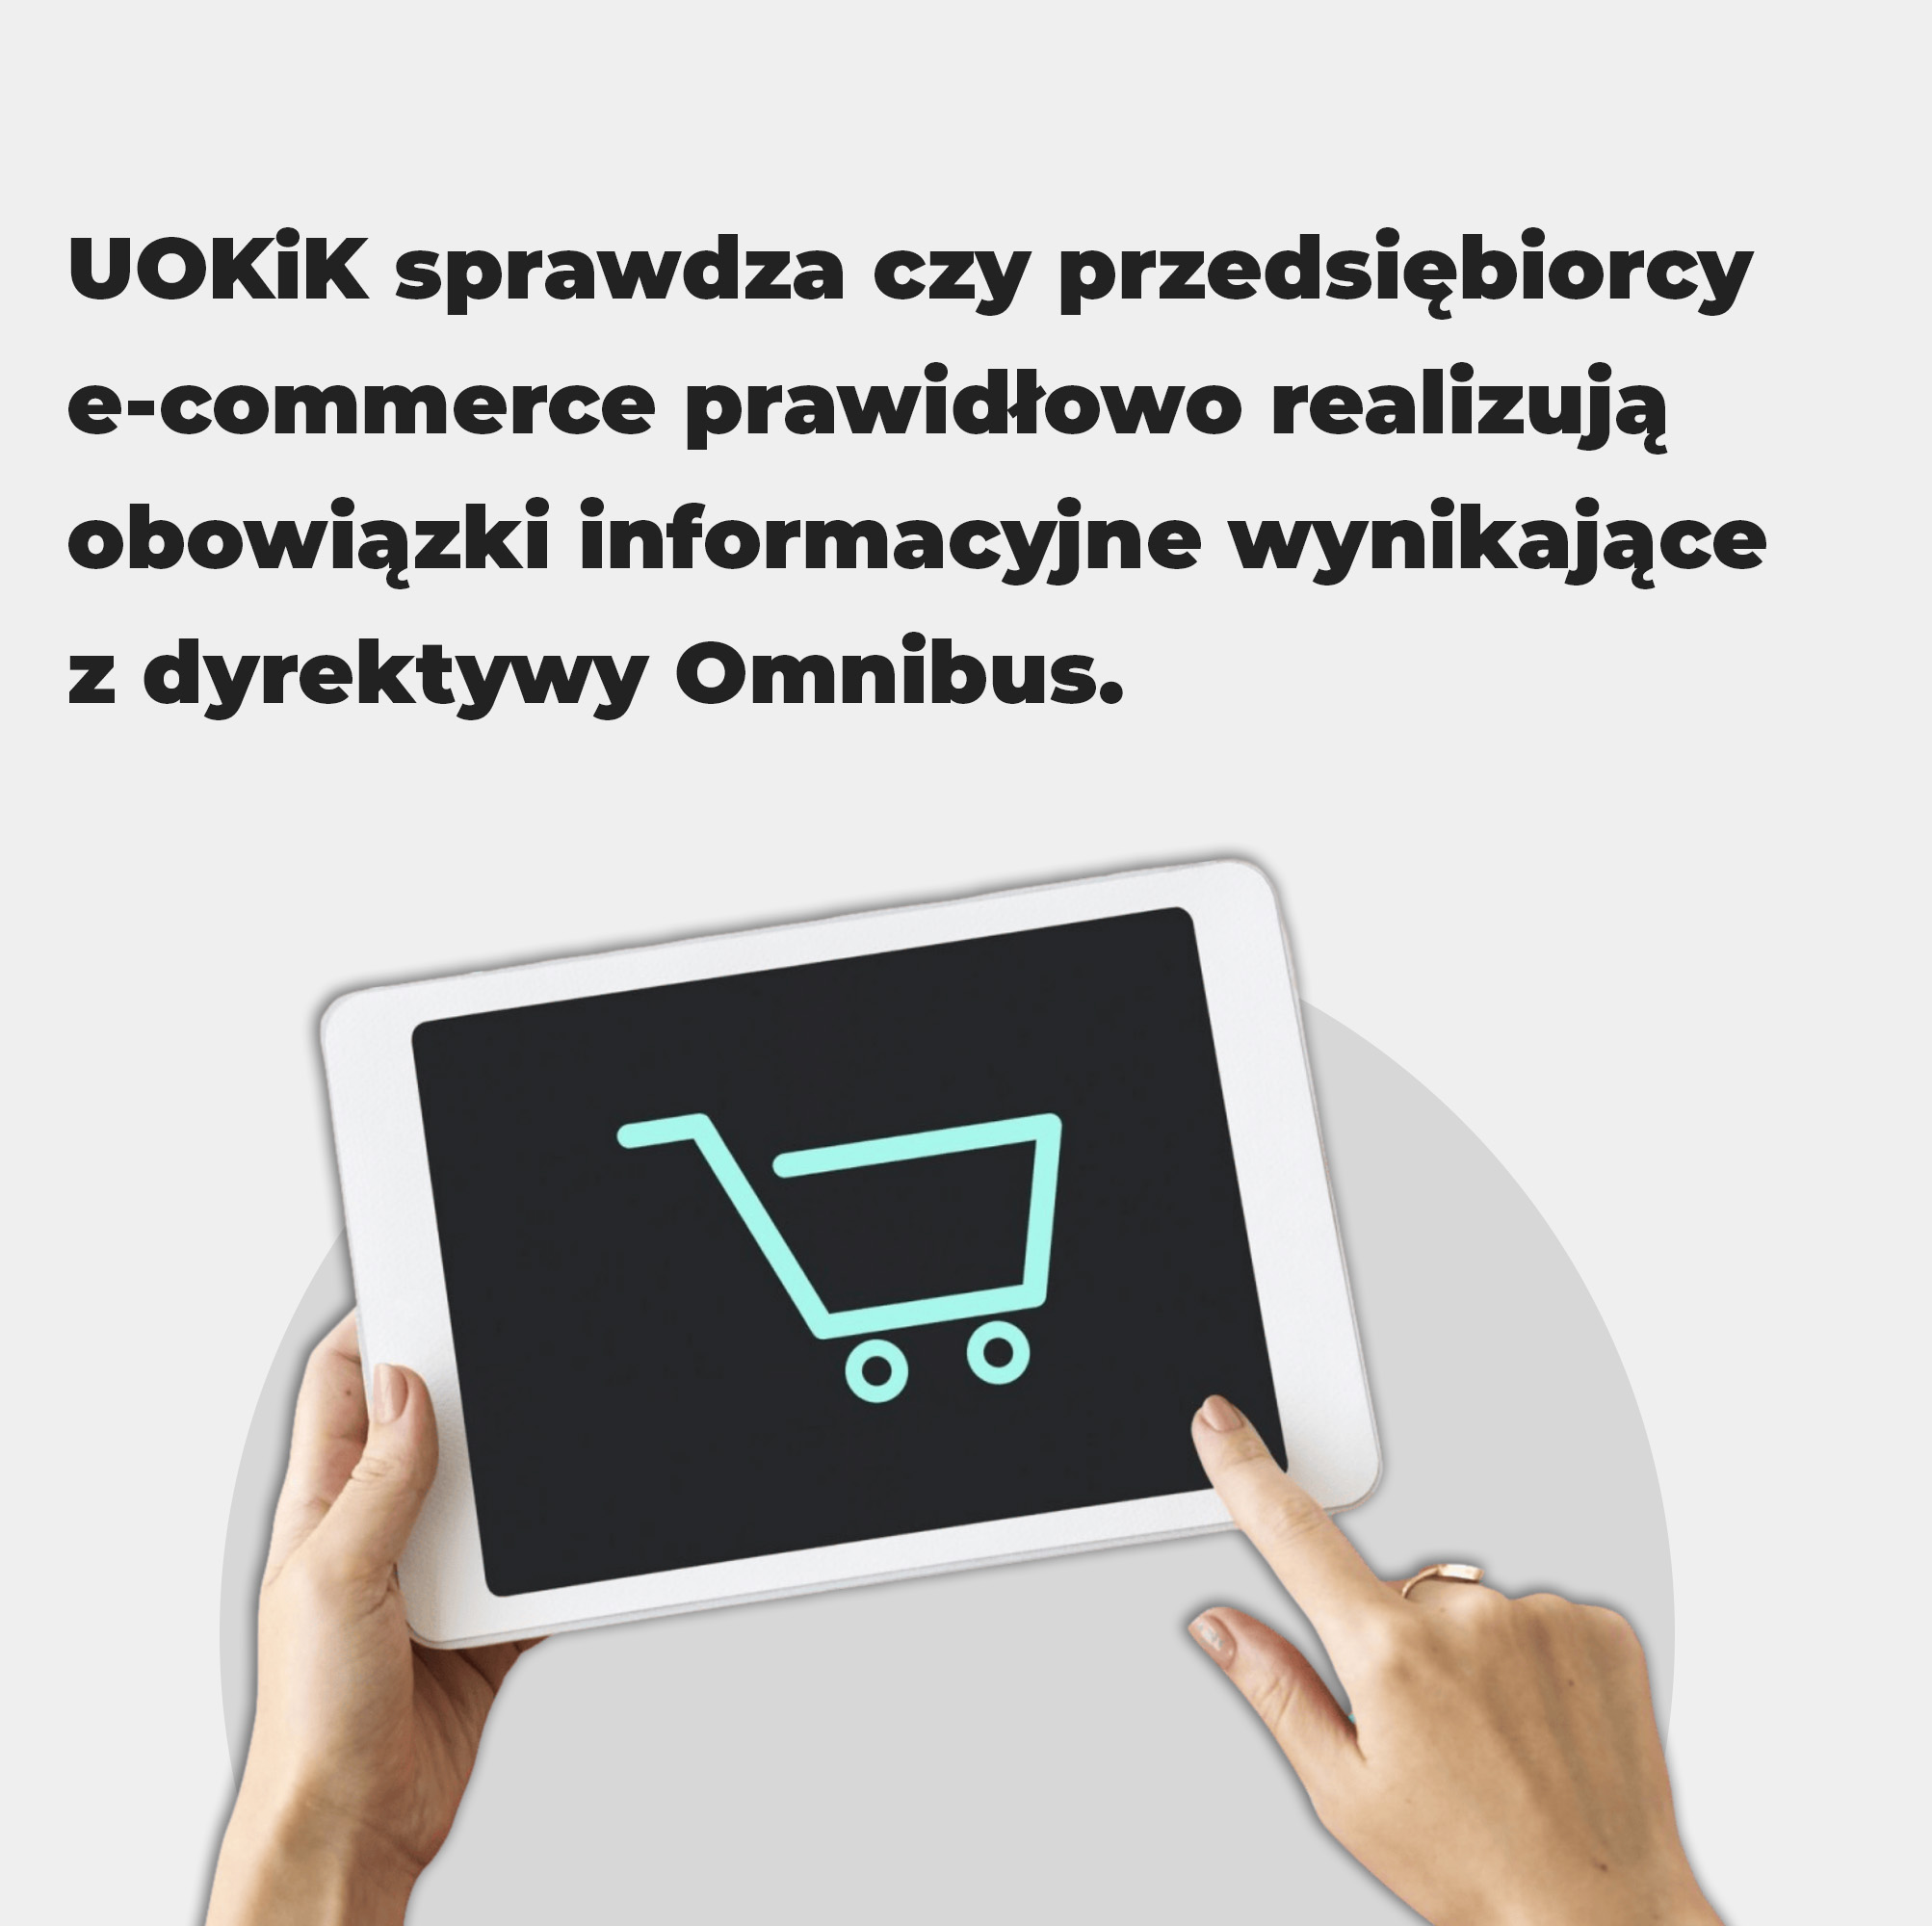 UOKiK sprawdza czy przedsiębiorcy e-commerce prawidłowo realizują obowiązki informacyjne wynikające z dyrektywy Omnibus. Poniżej grafika przedstawiająca urządzenie elektroniczne, na którym widnieje grafika przedstawiająca logo wózka sklepowego i ręce, które dotykają ekranu.